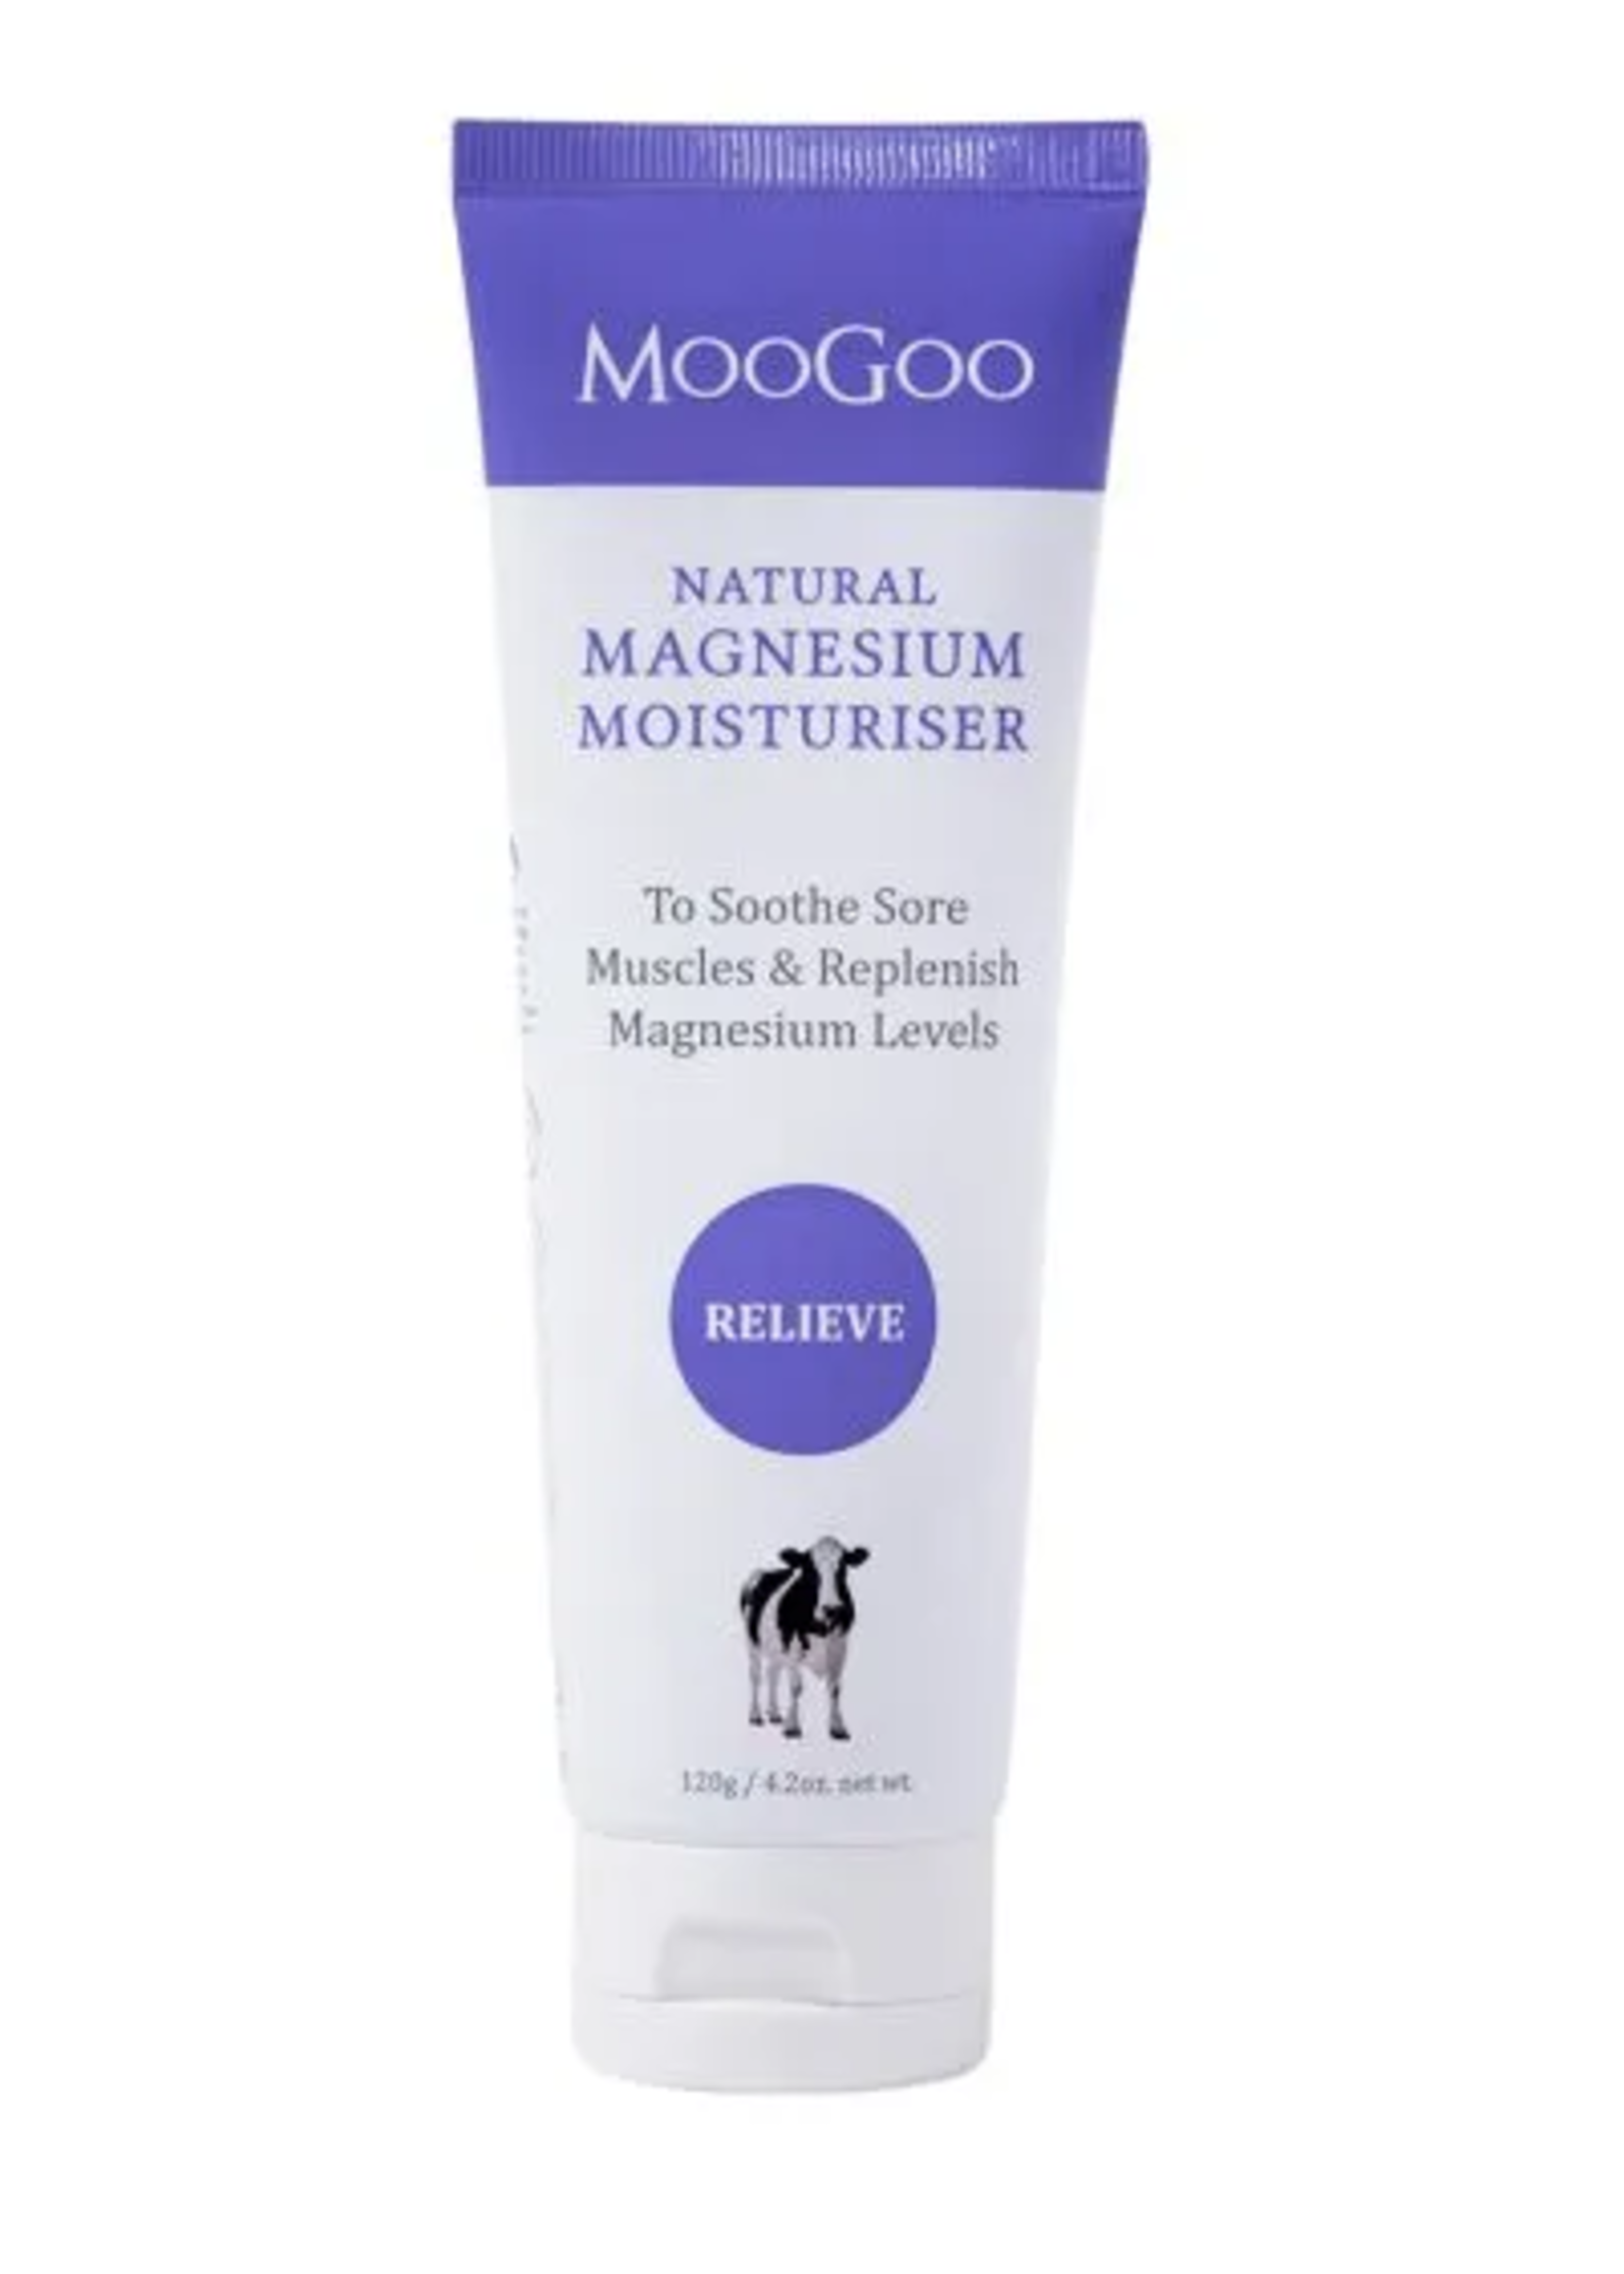 MooGoo MooGoo Magnesium Moisturiser 120g